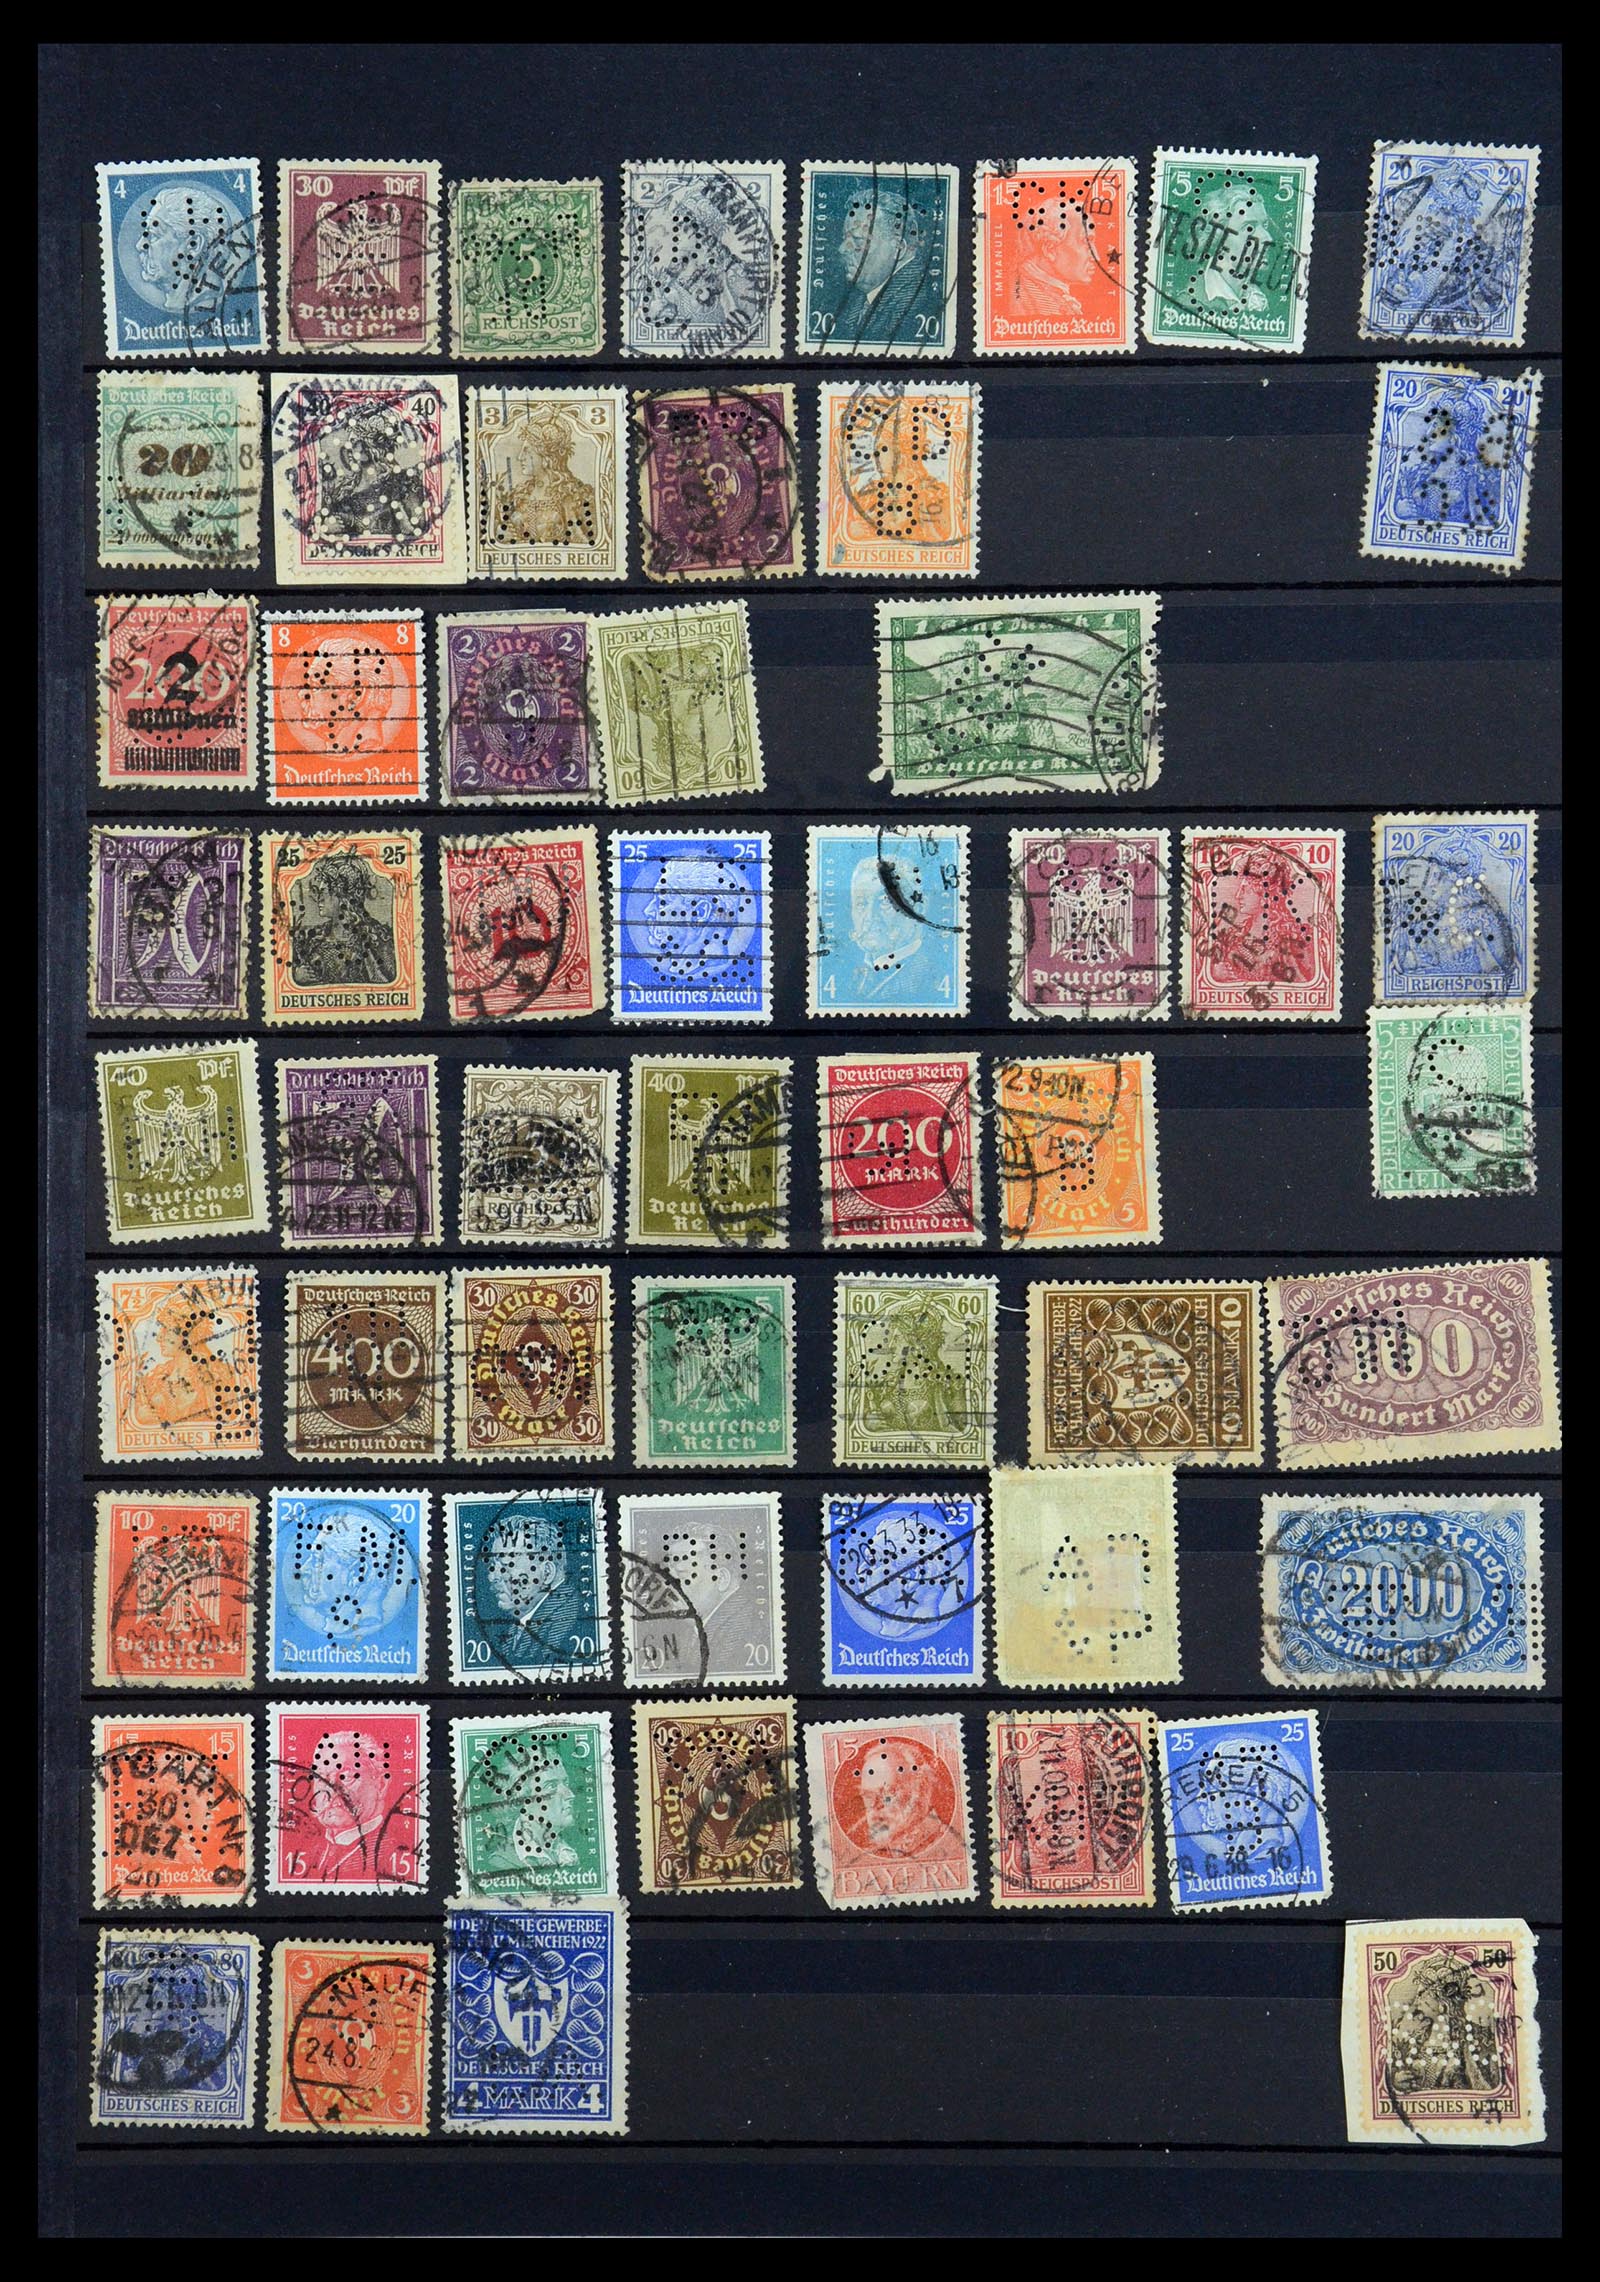 35183 052 - Stamp Collection 35183 German Reich perfins 1880-1945.